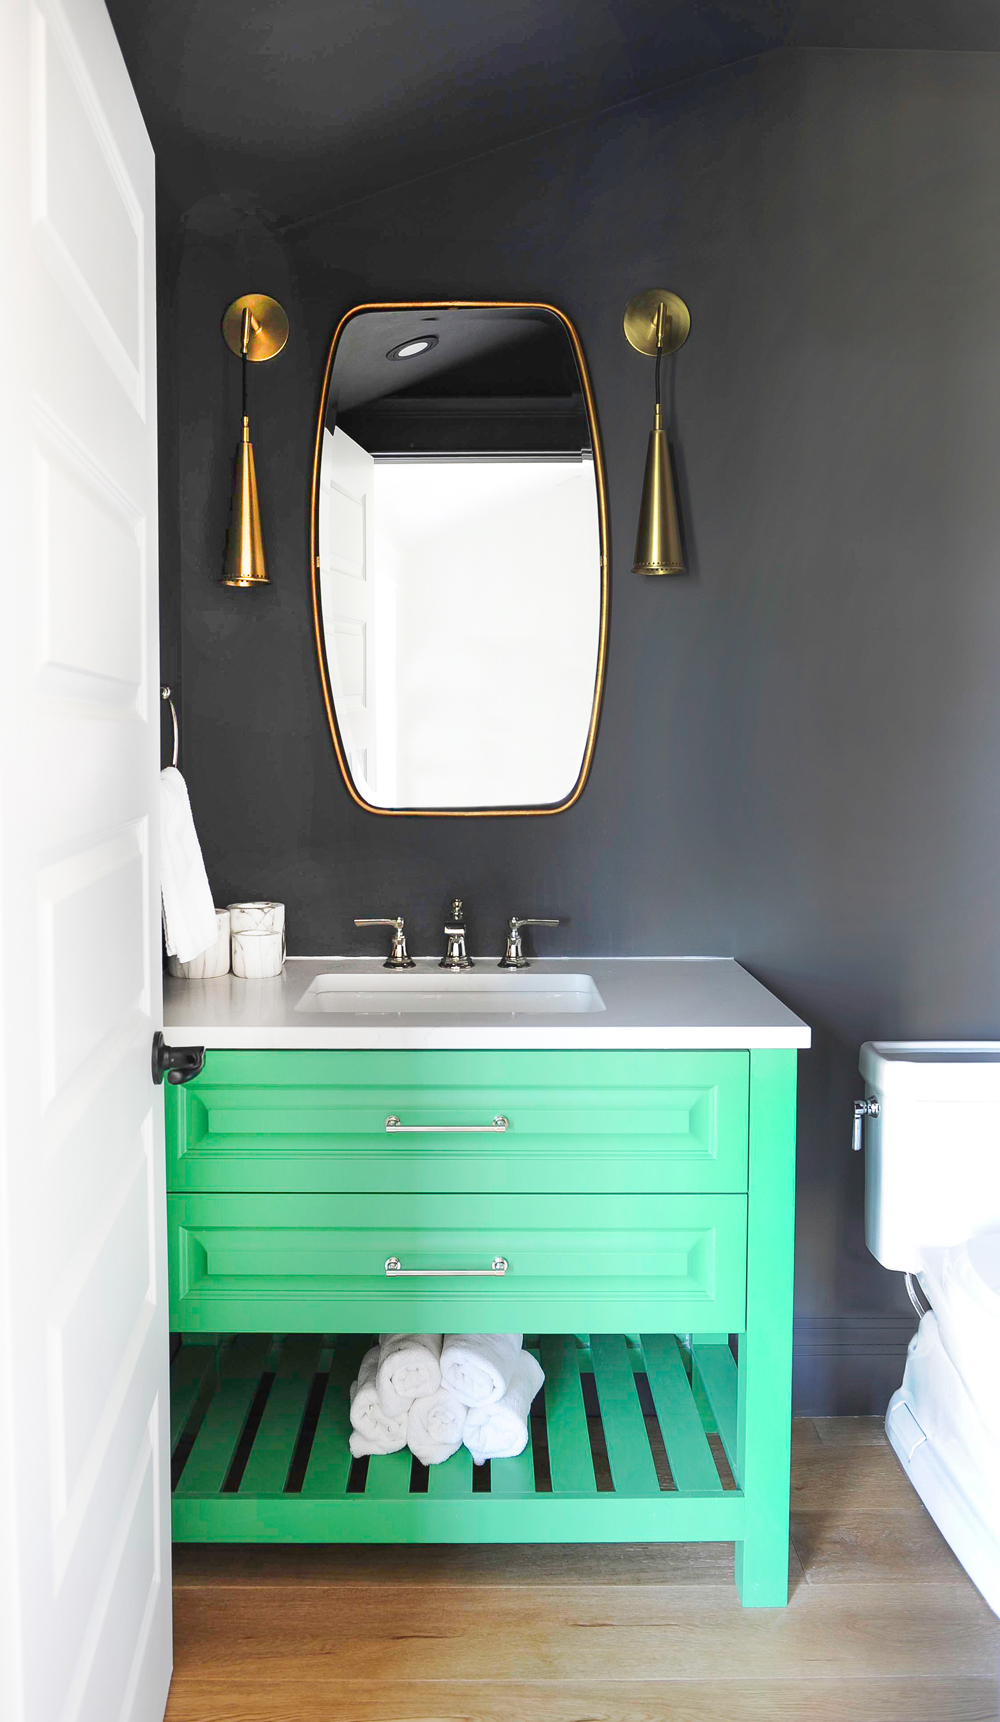 Recent bathroom renovation with green vanity